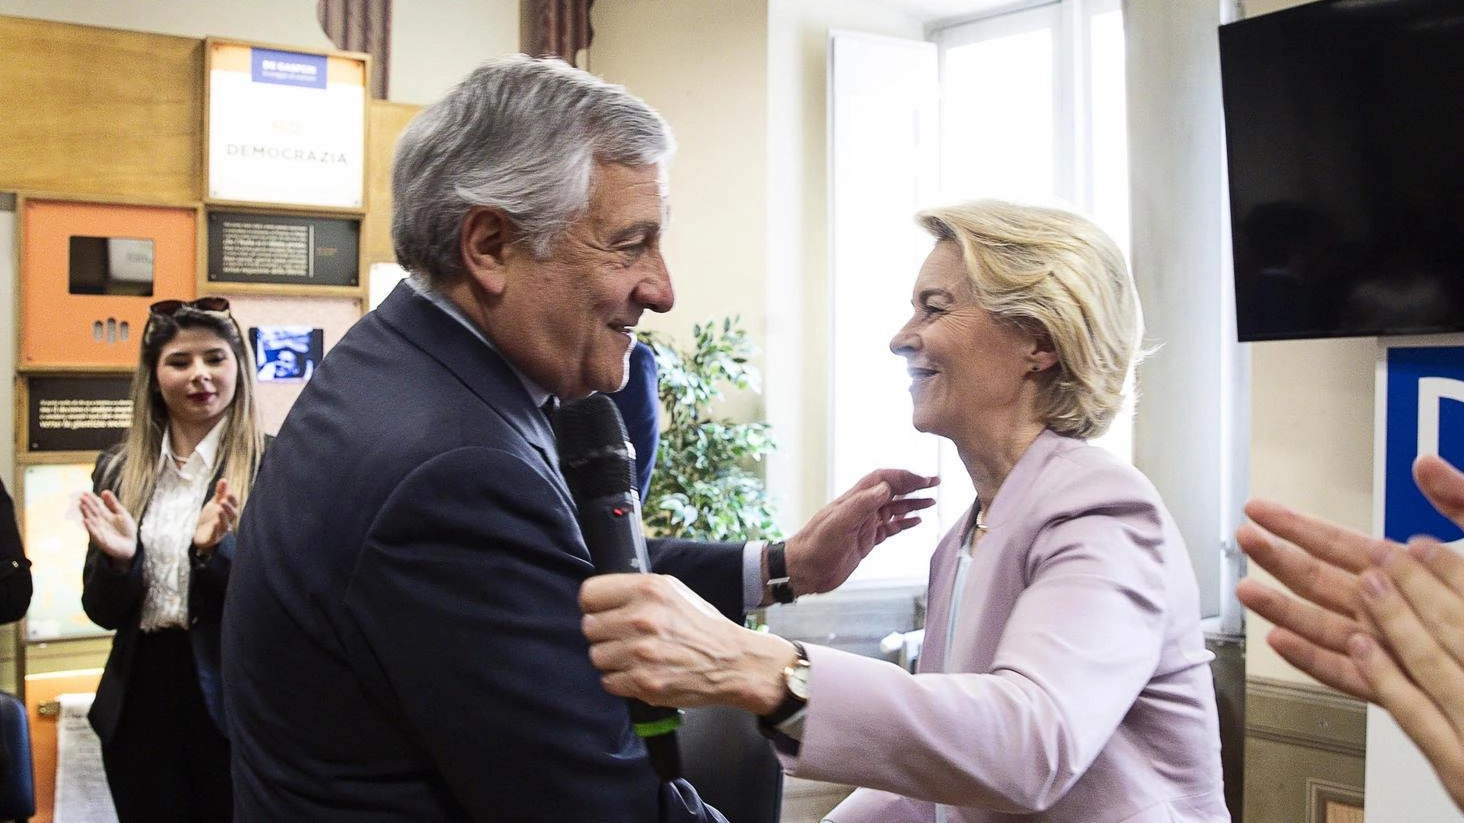 La presidente della Commissione Ue in visita, ma non incontra Meloni. Agenda incerta fino all’ultimo: salta la partecipazione alla kermesse azzurra. Tajani assicura: è la candidata di tutto il Ppe. Ma ci sono malumori nel partito.